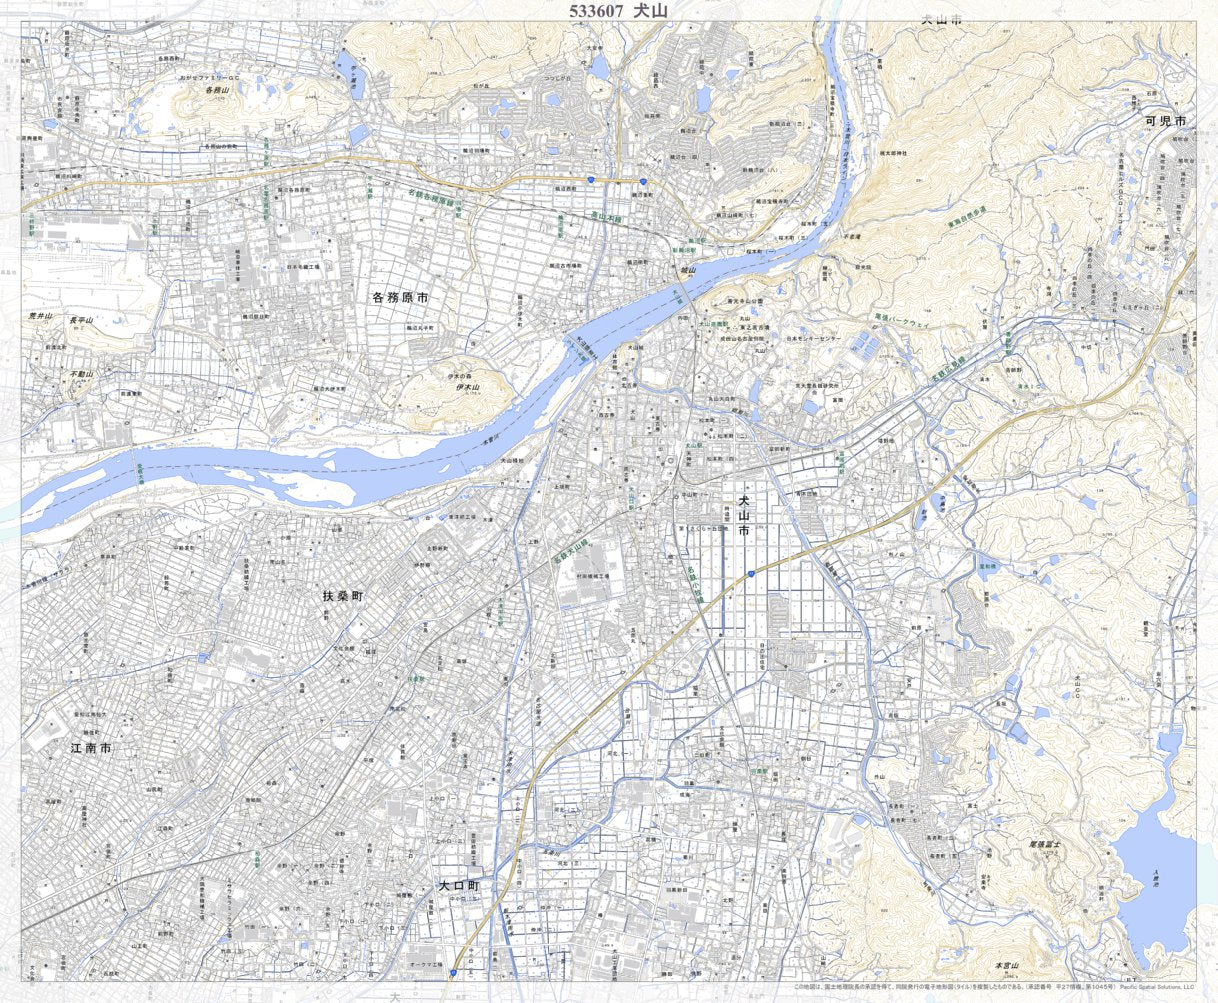 533607 犬山 （いぬやま Inuyama）, 地形図 Map by Pacific Spatial 